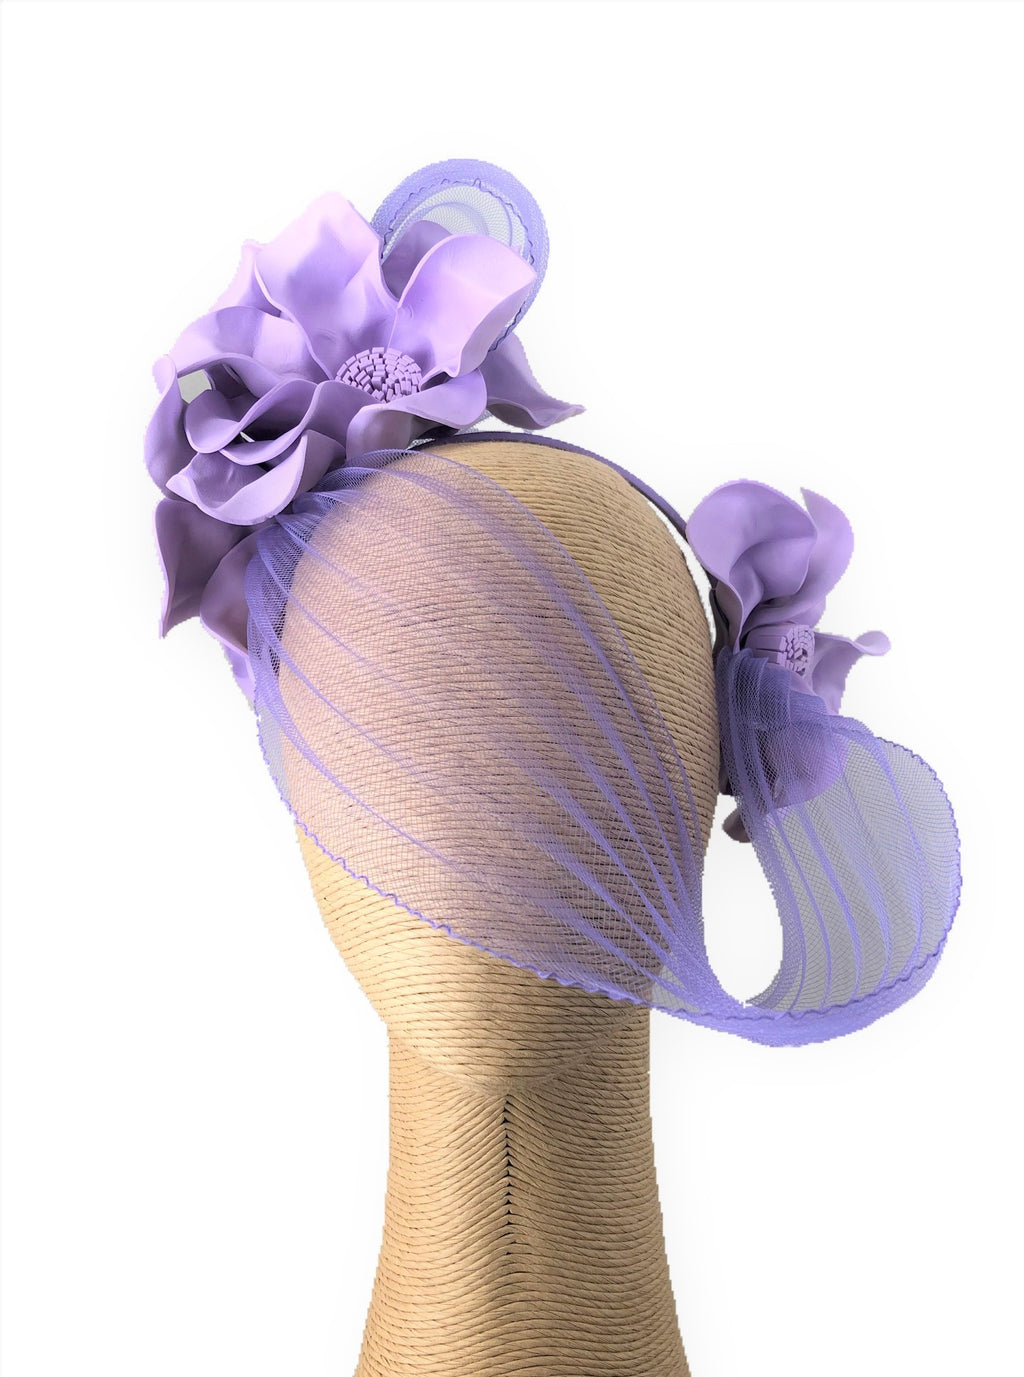 Claire Hahn Crinoline Mask Headpiece in Lavender